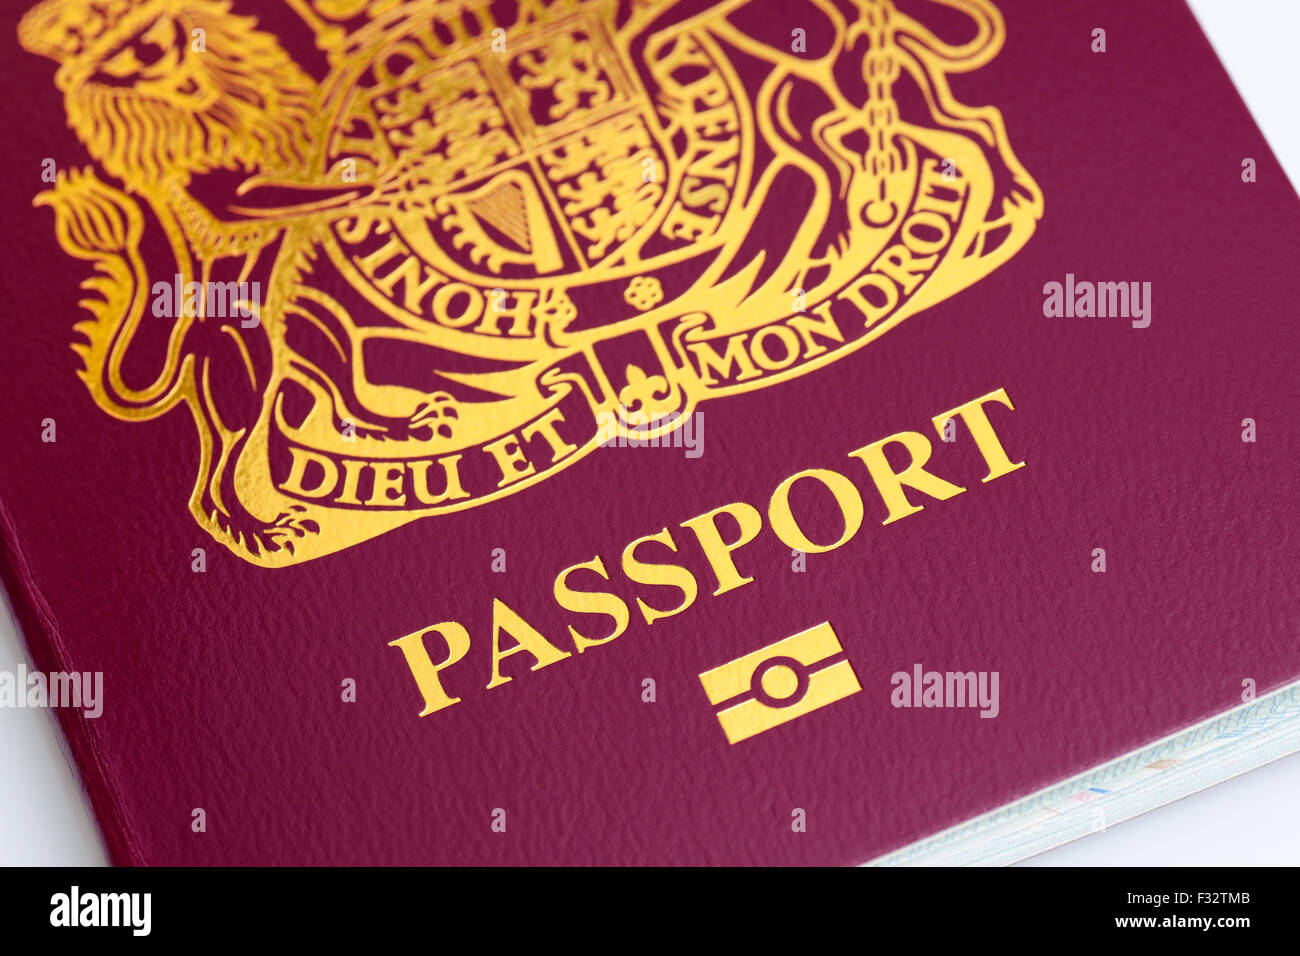 Passeport biométrique britannique Banque D'Images